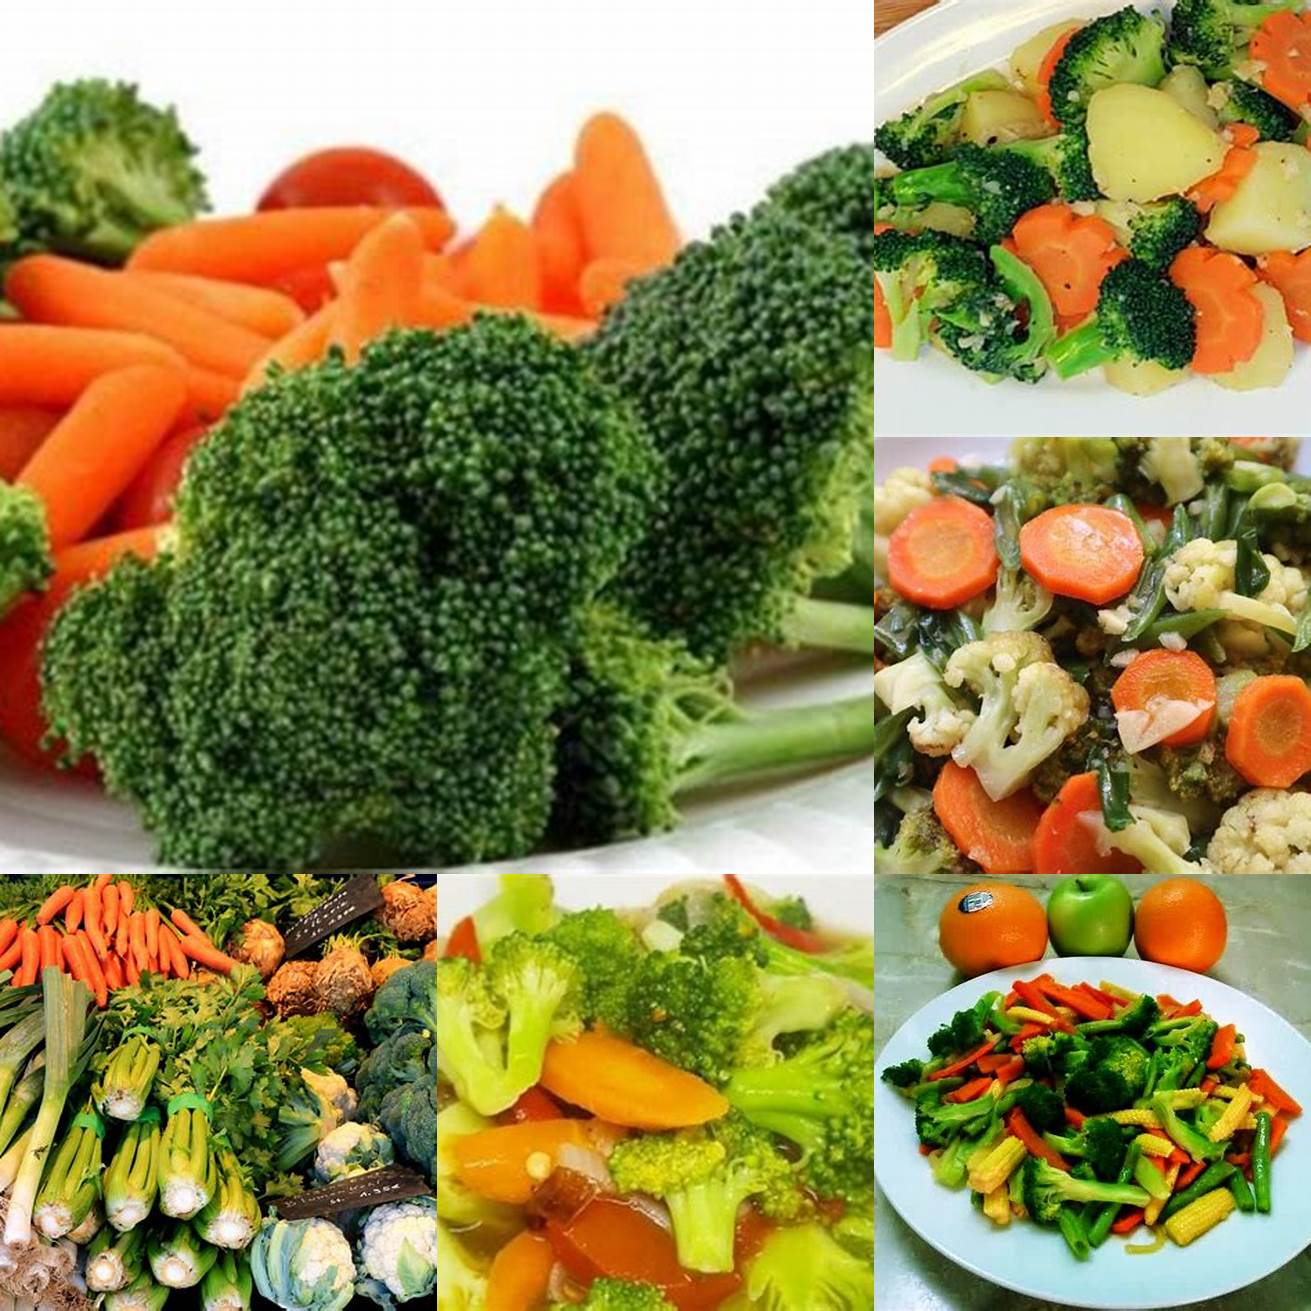 Sayur-sayuran seperti wortel kentang brokoli dan bayam